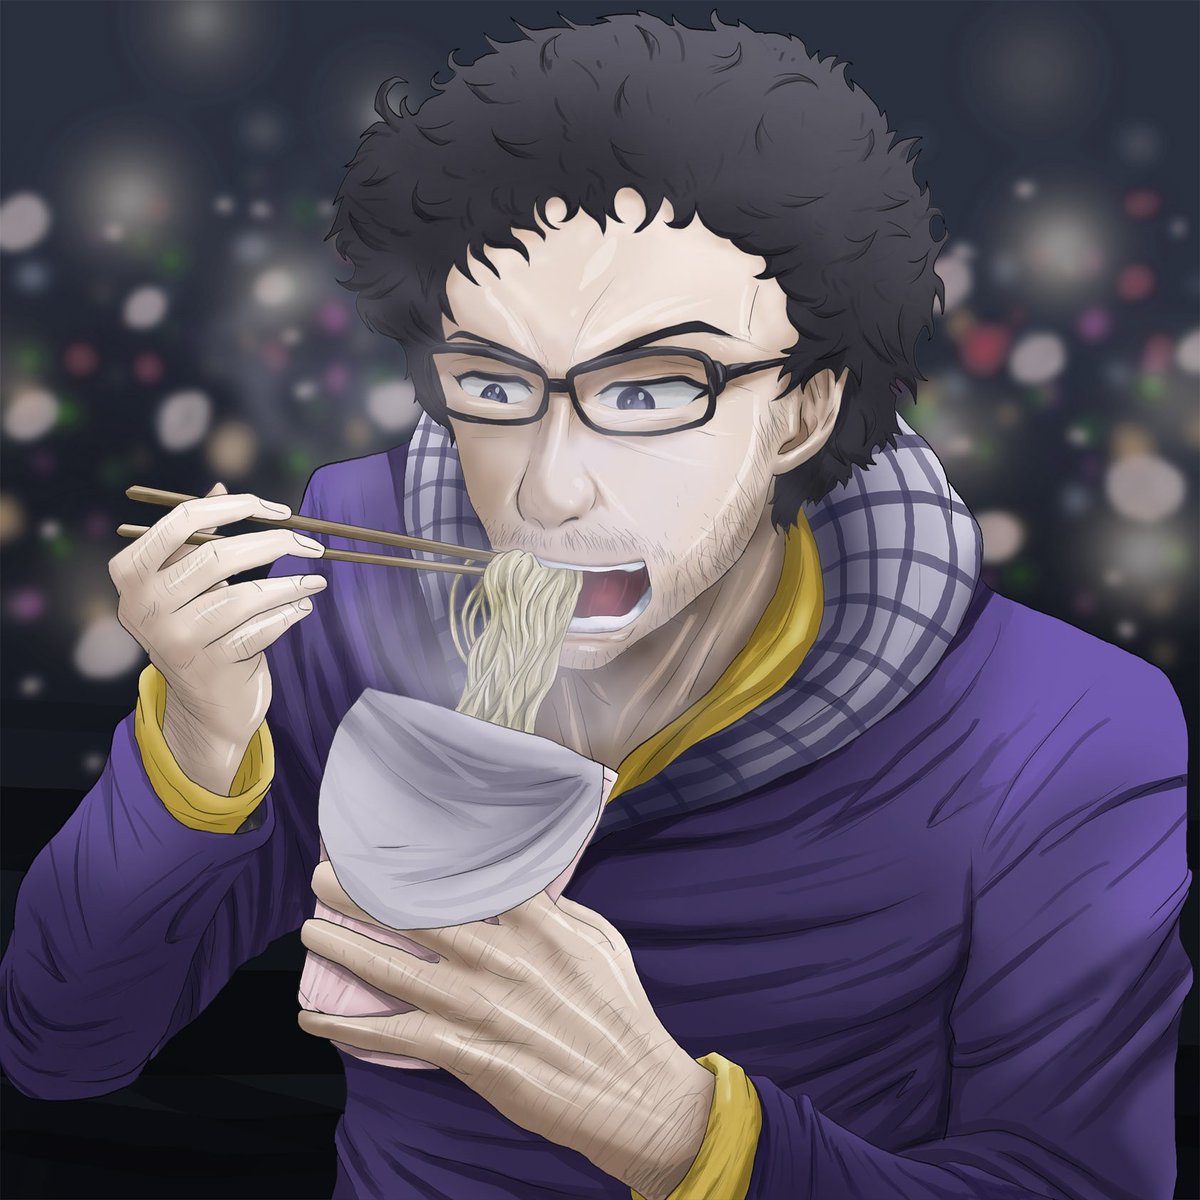 Masami Krock V Twitter おはようございます 最近よくカップ麺食べるんですよ 寒いから美味しくてつい 野菜とかも食べねば とりあえず野菜ジュースで カップラーメンを食べる男です カップラーメン イラスト 絵描き Noodle T Co Fntto7prha Twitter